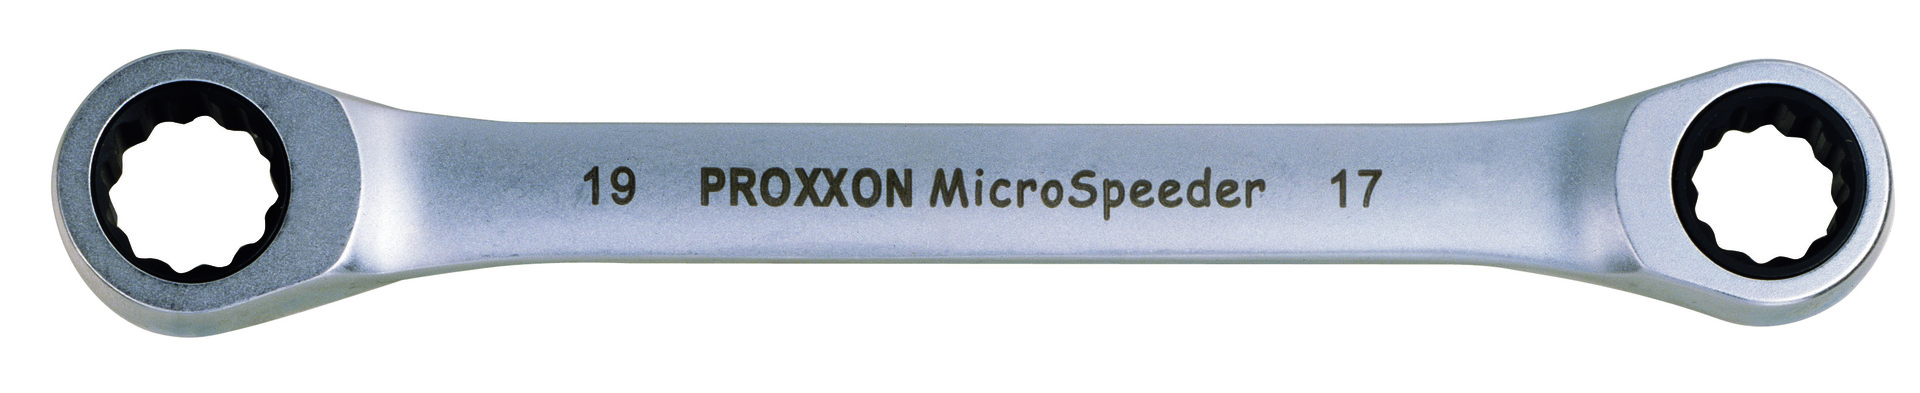 Proxxon Micro-Speeder Ratschenschlüssel 12x13mm